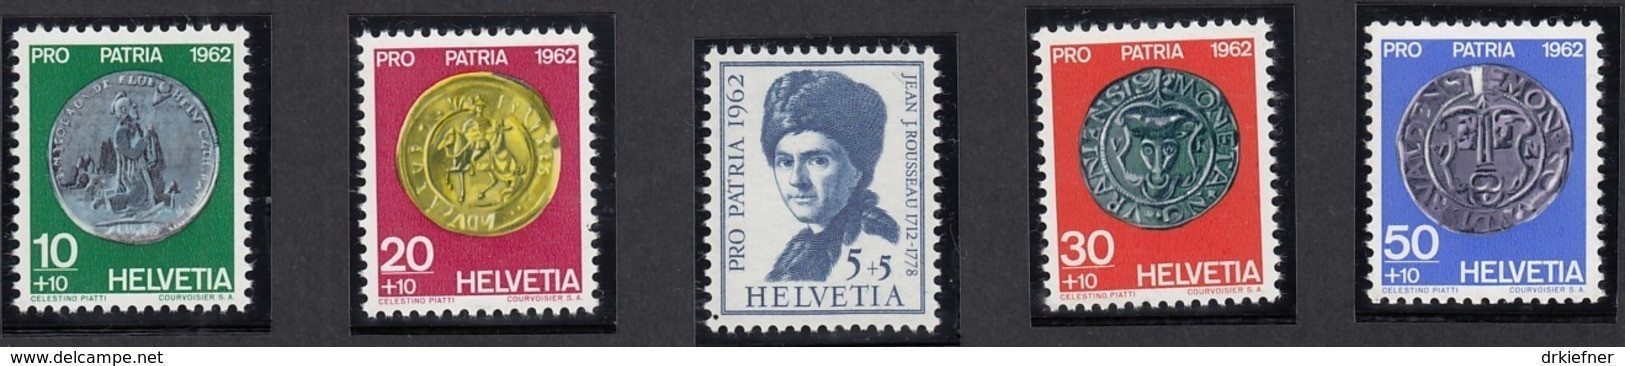 SCHWEIZ  751-755,  Postfrisch **, Pro Patria 1962, Münzen - Ungebraucht